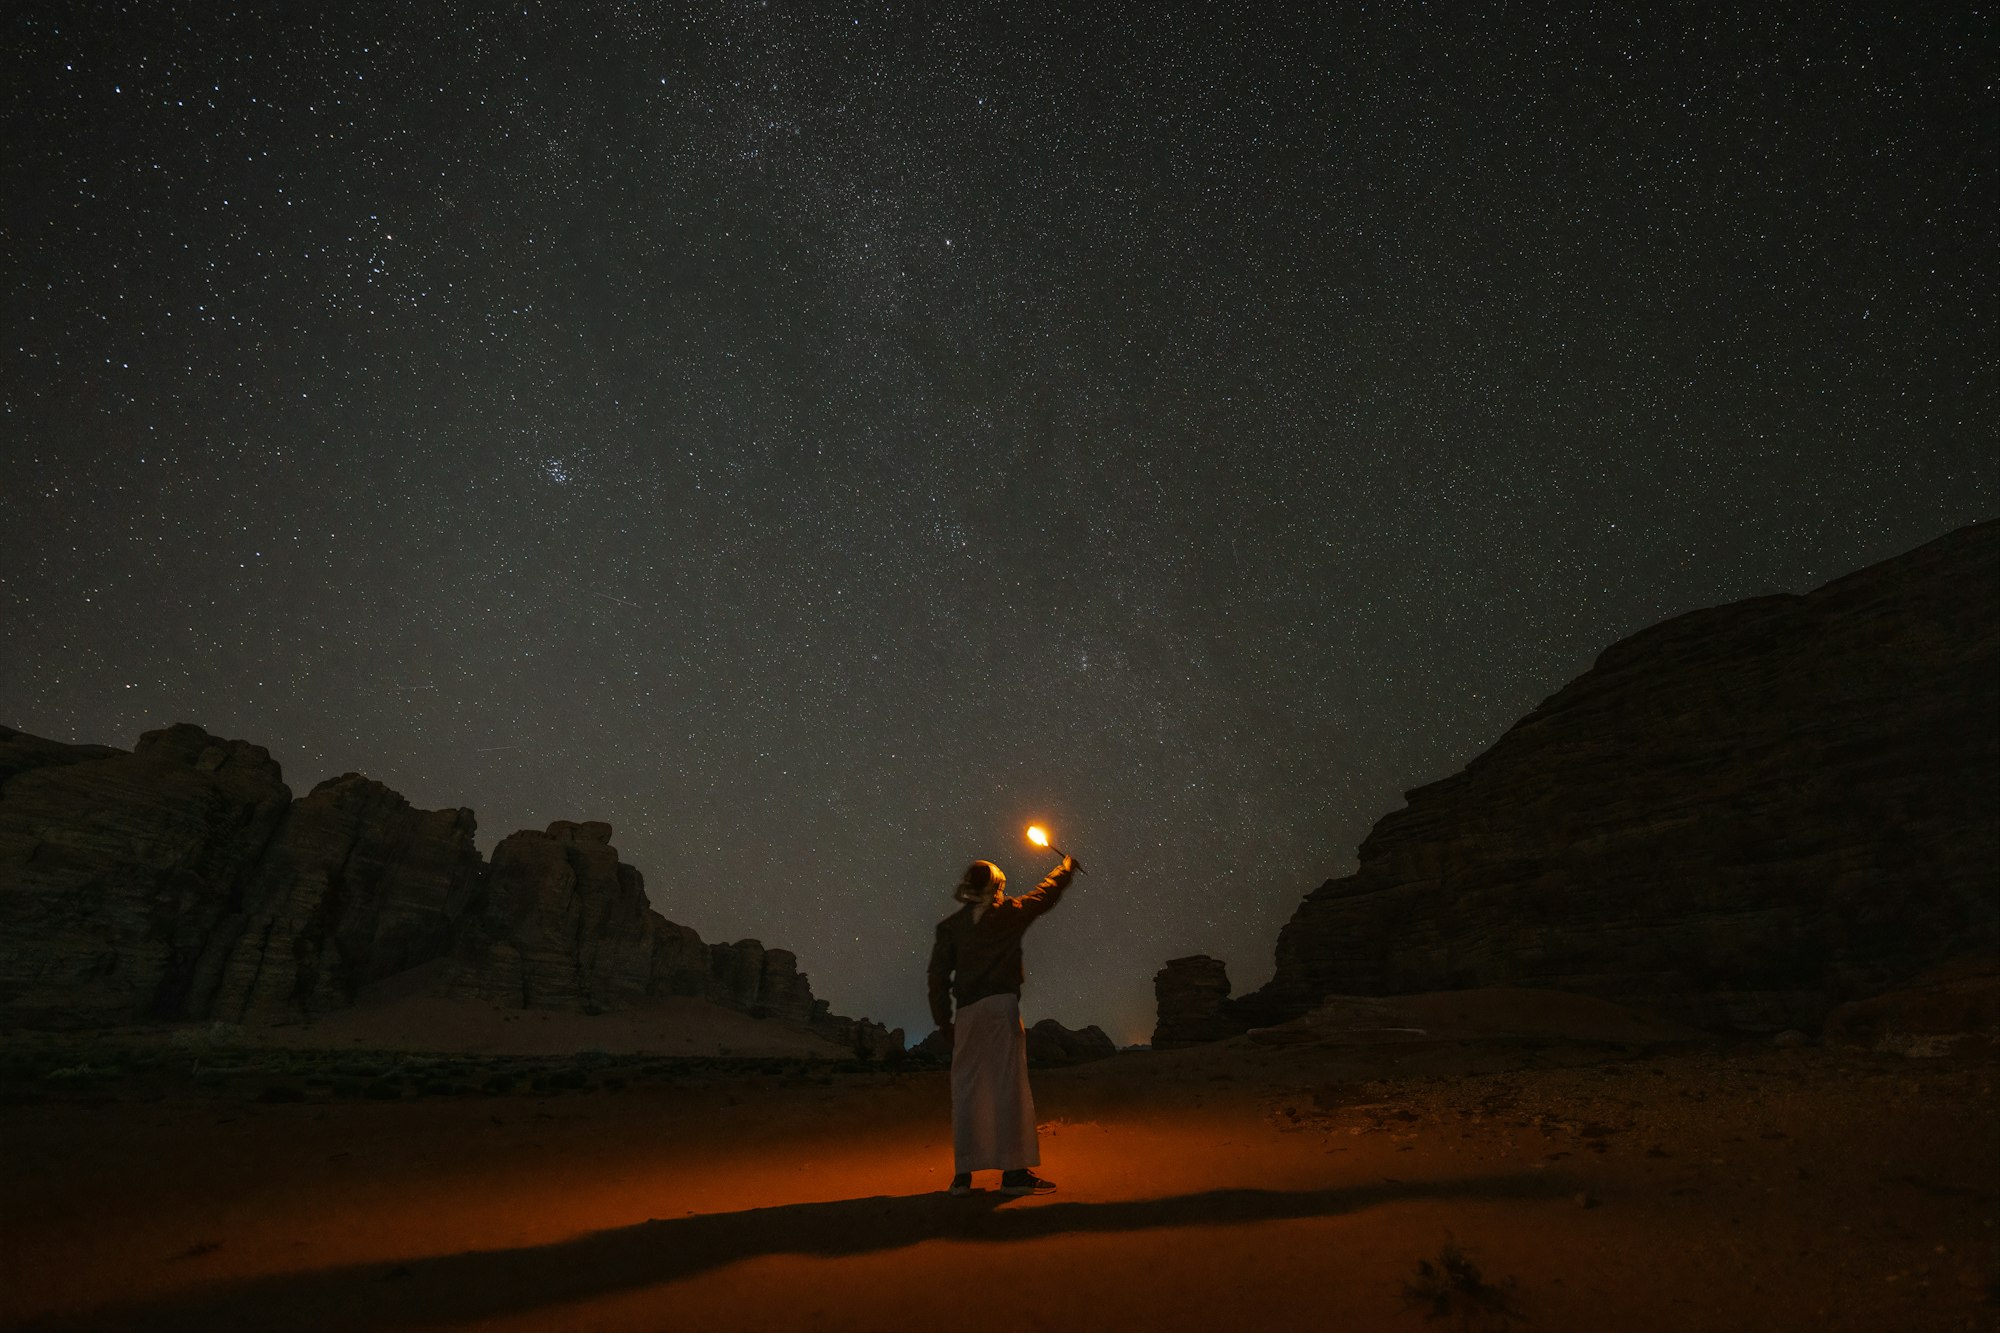 The remote NEOM desert environment sets the scene for spectacular stargazing, Hisma Desert – NEOM, Saudi Arabia.